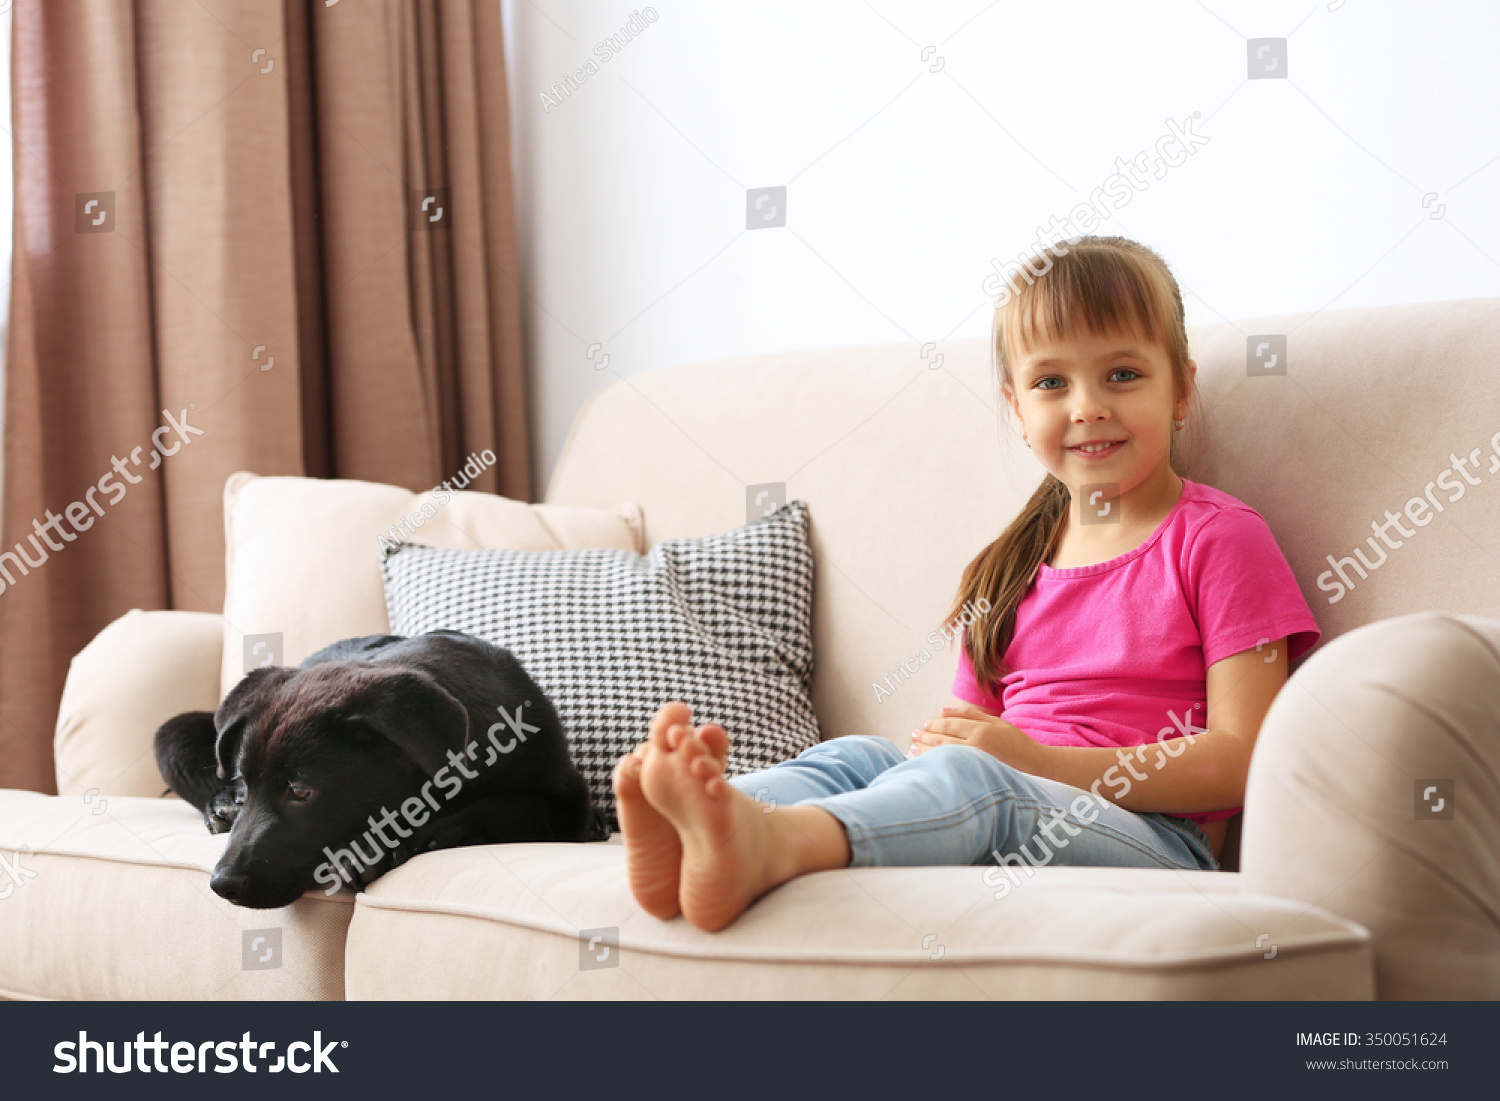 девочку нашли в диване